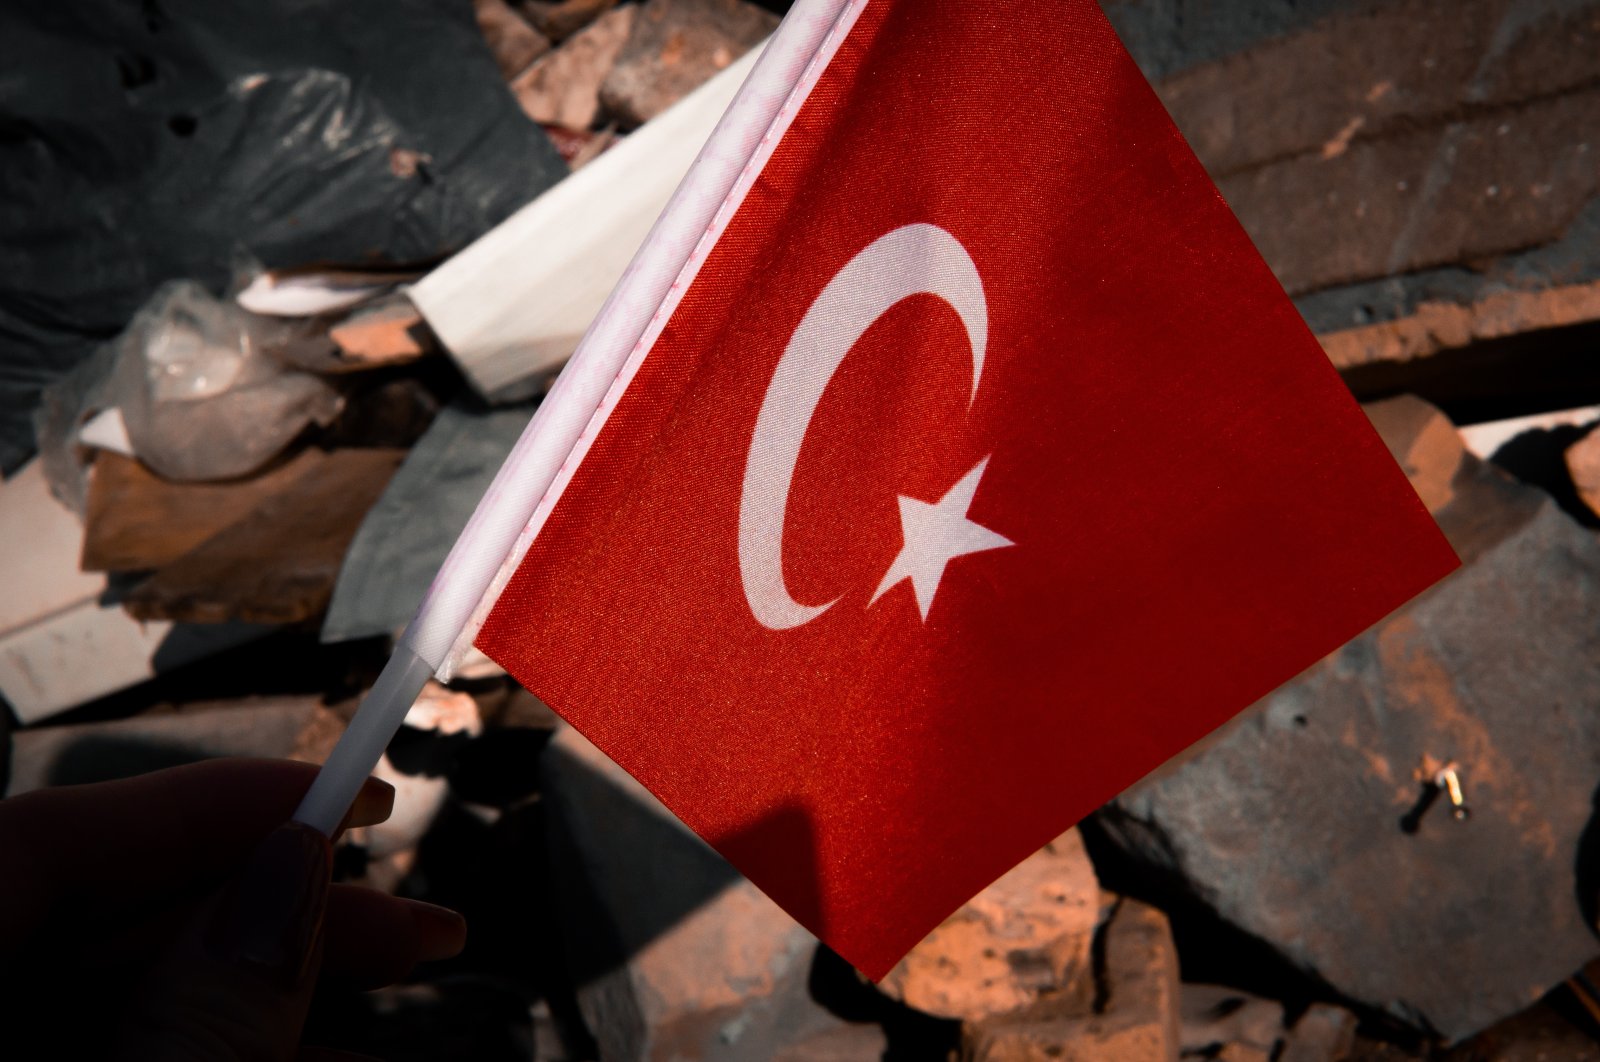 Gempa Türkiye: Wartawan Turki memberi contoh patriotisme